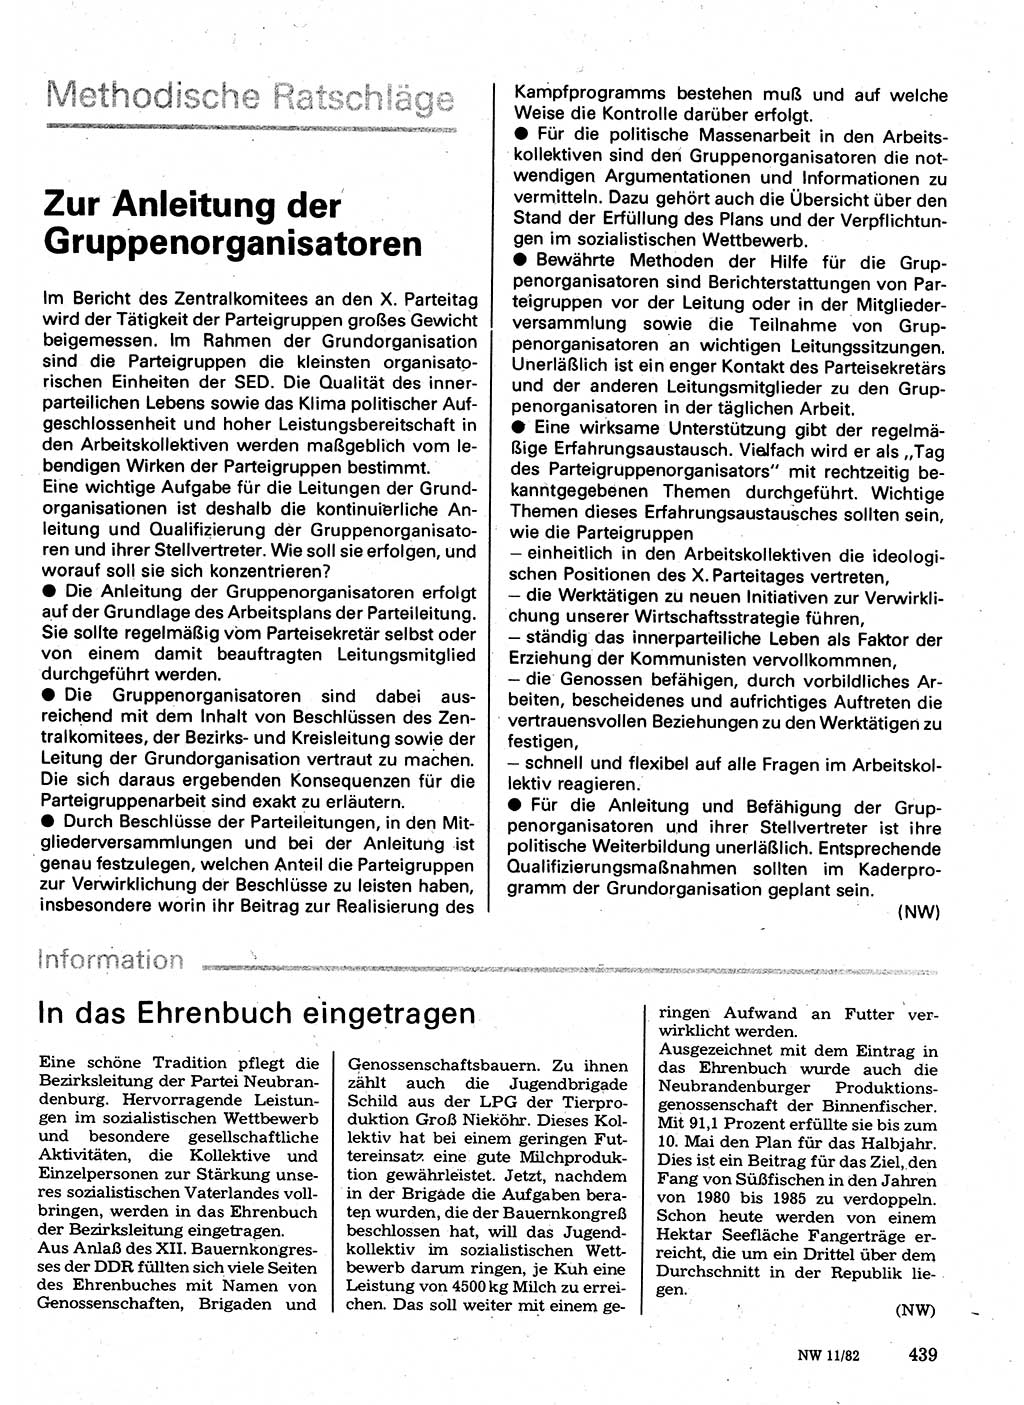 Neuer Weg (NW), Organ des Zentralkomitees (ZK) der SED (Sozialistische Einheitspartei Deutschlands) für Fragen des Parteilebens, 37. Jahrgang [Deutsche Demokratische Republik (DDR)] 1982, Seite 439 (NW ZK SED DDR 1982, S. 439)